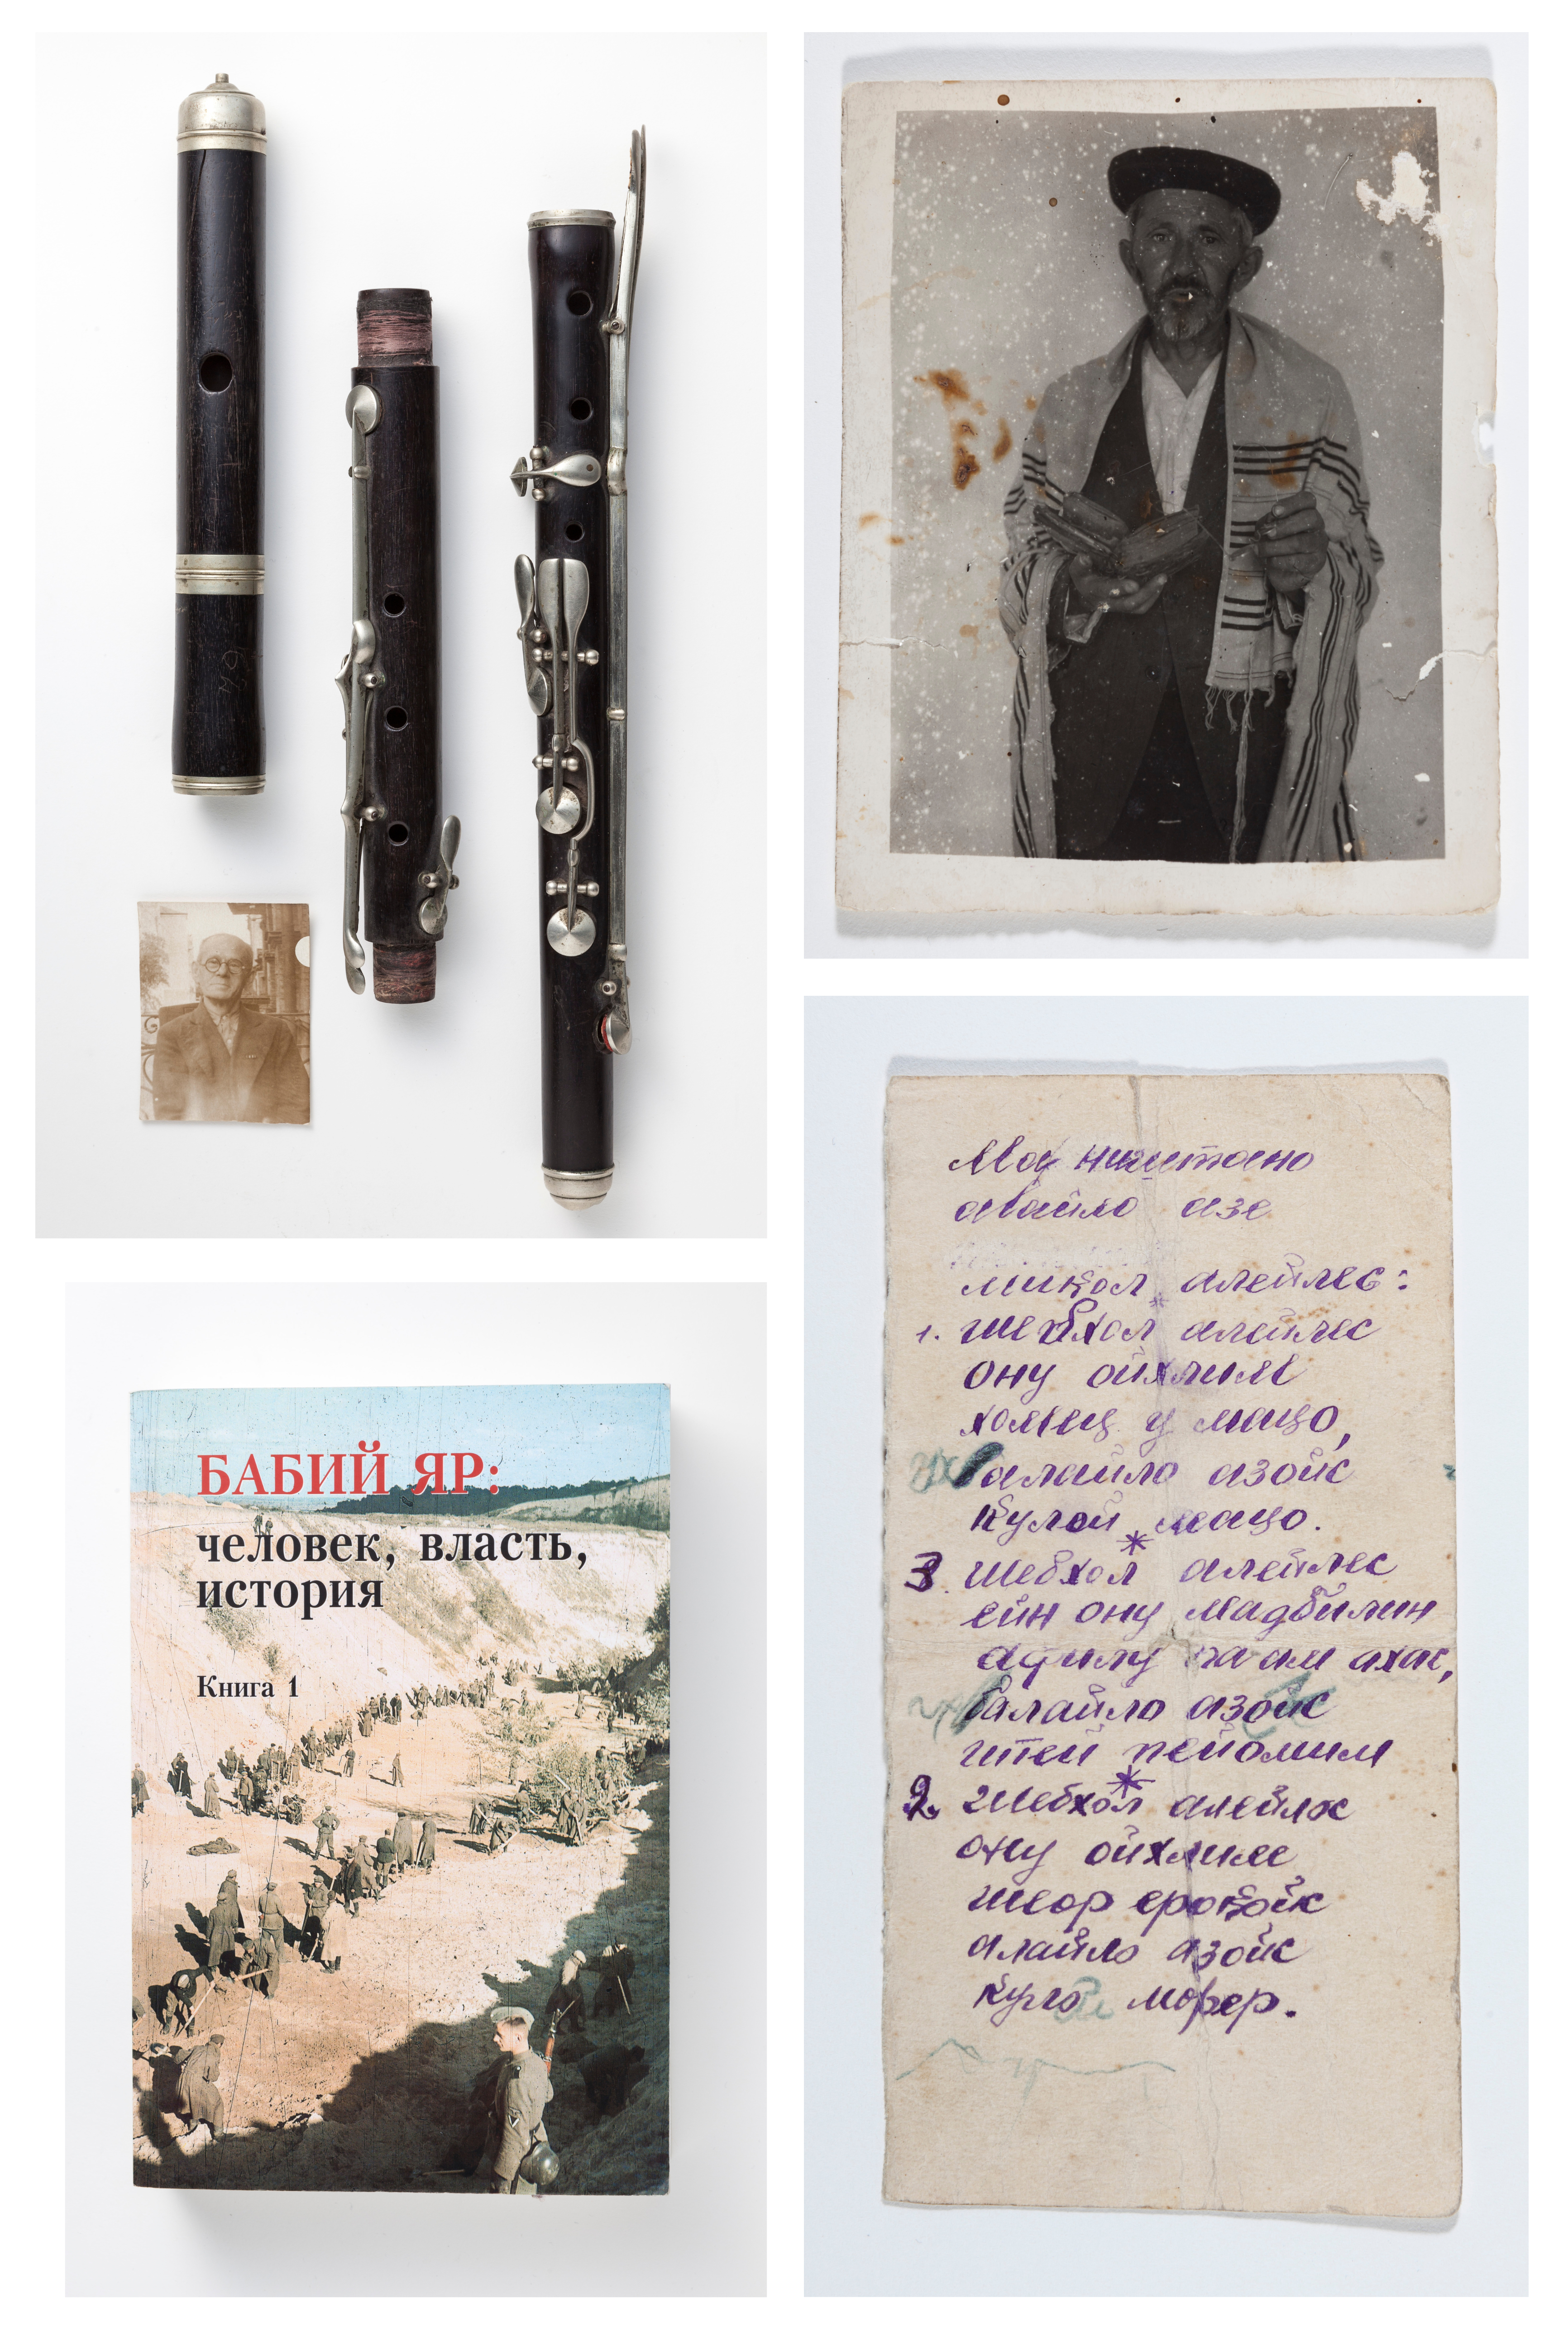 Collage mit vier Objekten: Ein handschriftlicher Zettel, eine Flöte , ein Männerportrait, ein Buch zu Babyn Jar. Mehr dazu im Alternativtext unten.